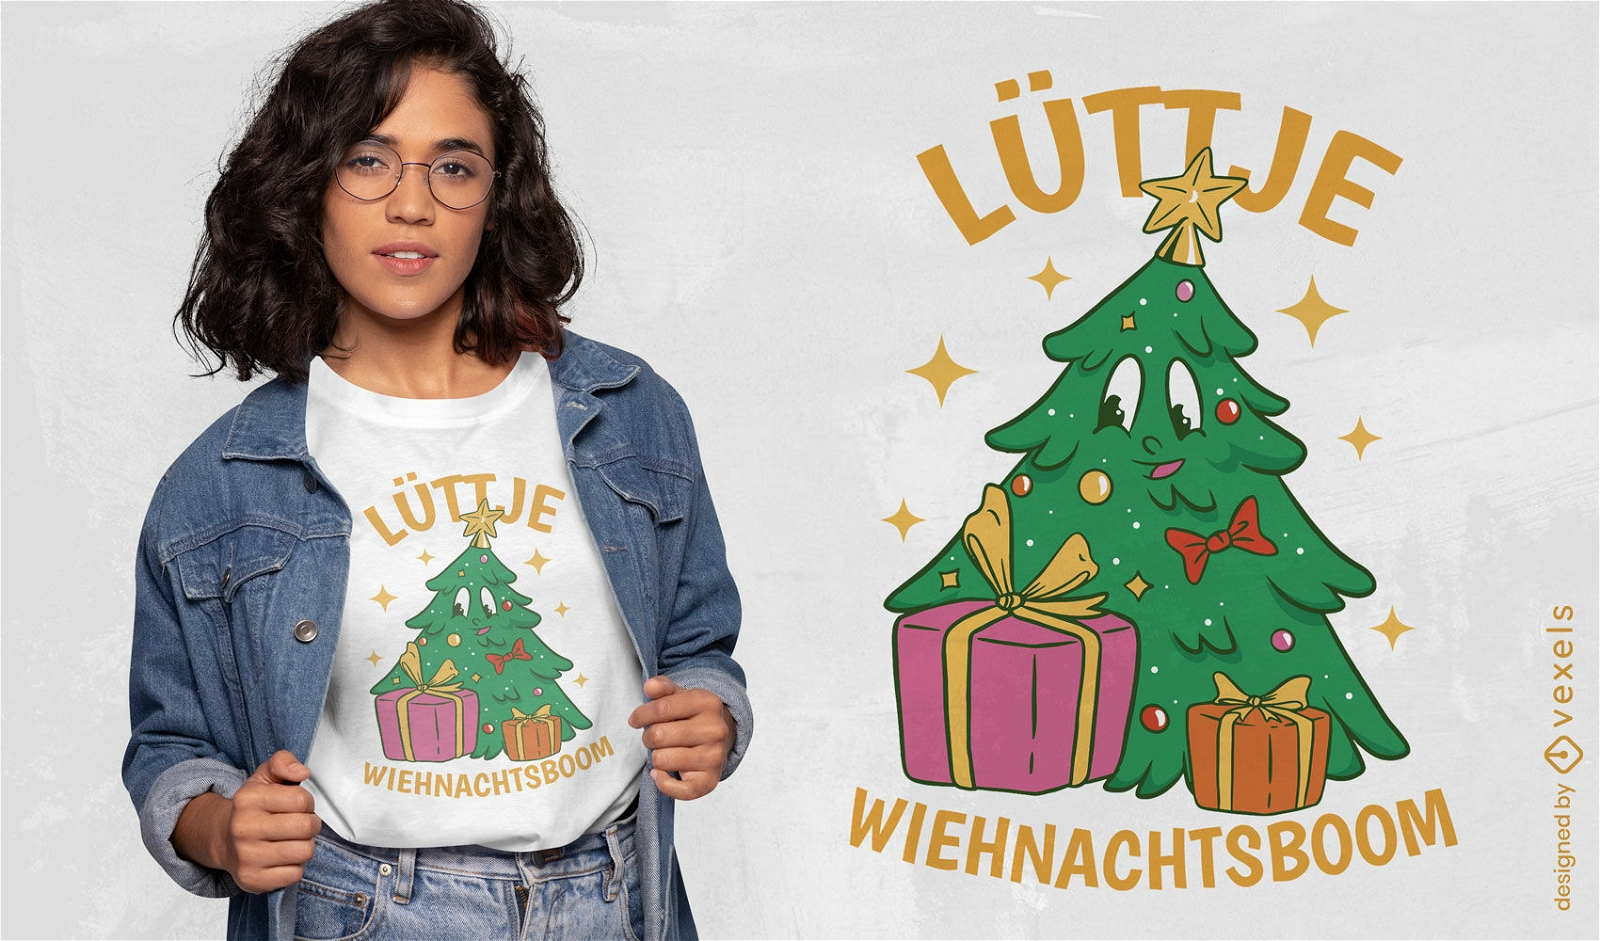 Fr?hlicher Weihnachtsbaumcharakter und pr?sentiert T-Shirt-Design